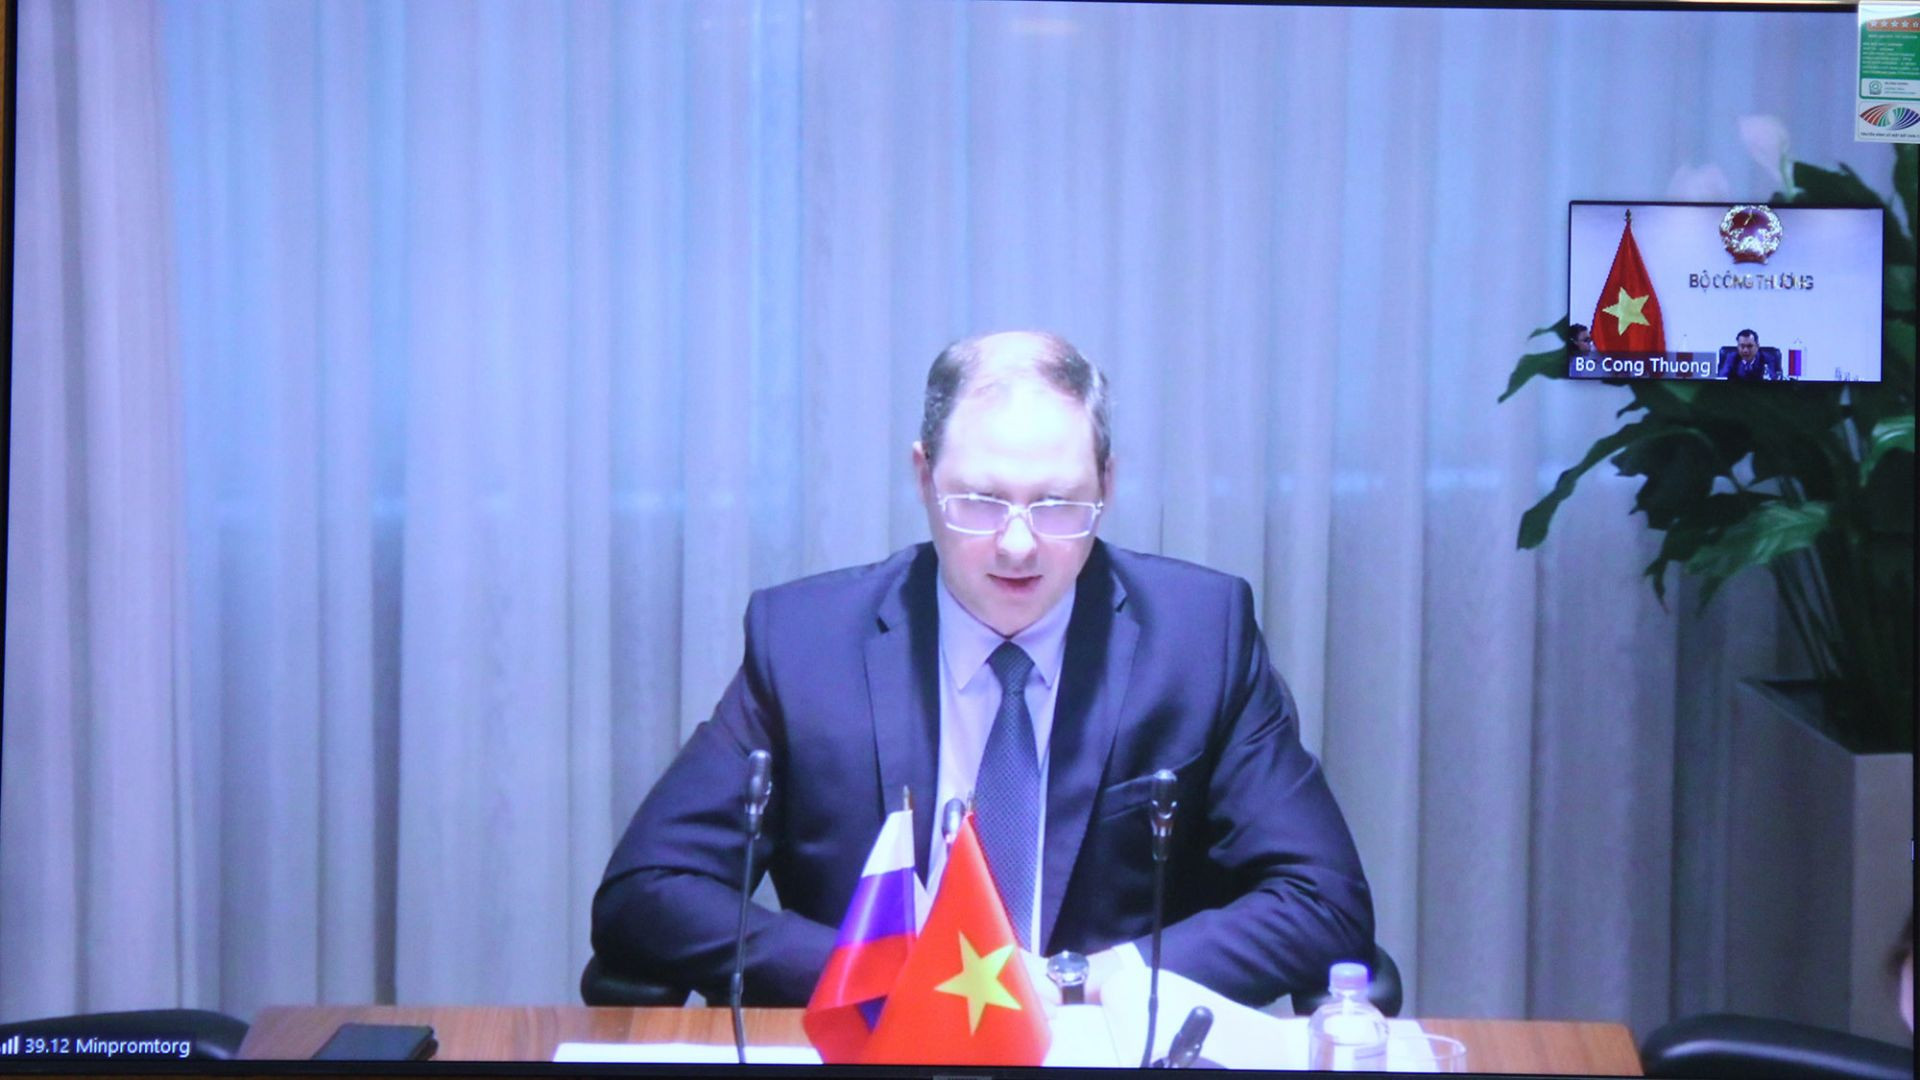 Thứ trưởng Liên bang Nga Gruzdev cho biết, Liên bang Nga muốn đẩy nhanh hợp tác với Việt Nam trong lĩnh vực sản xuất ô tô, đóng góp vào sự phát triển của ngành này tại Việt Nam